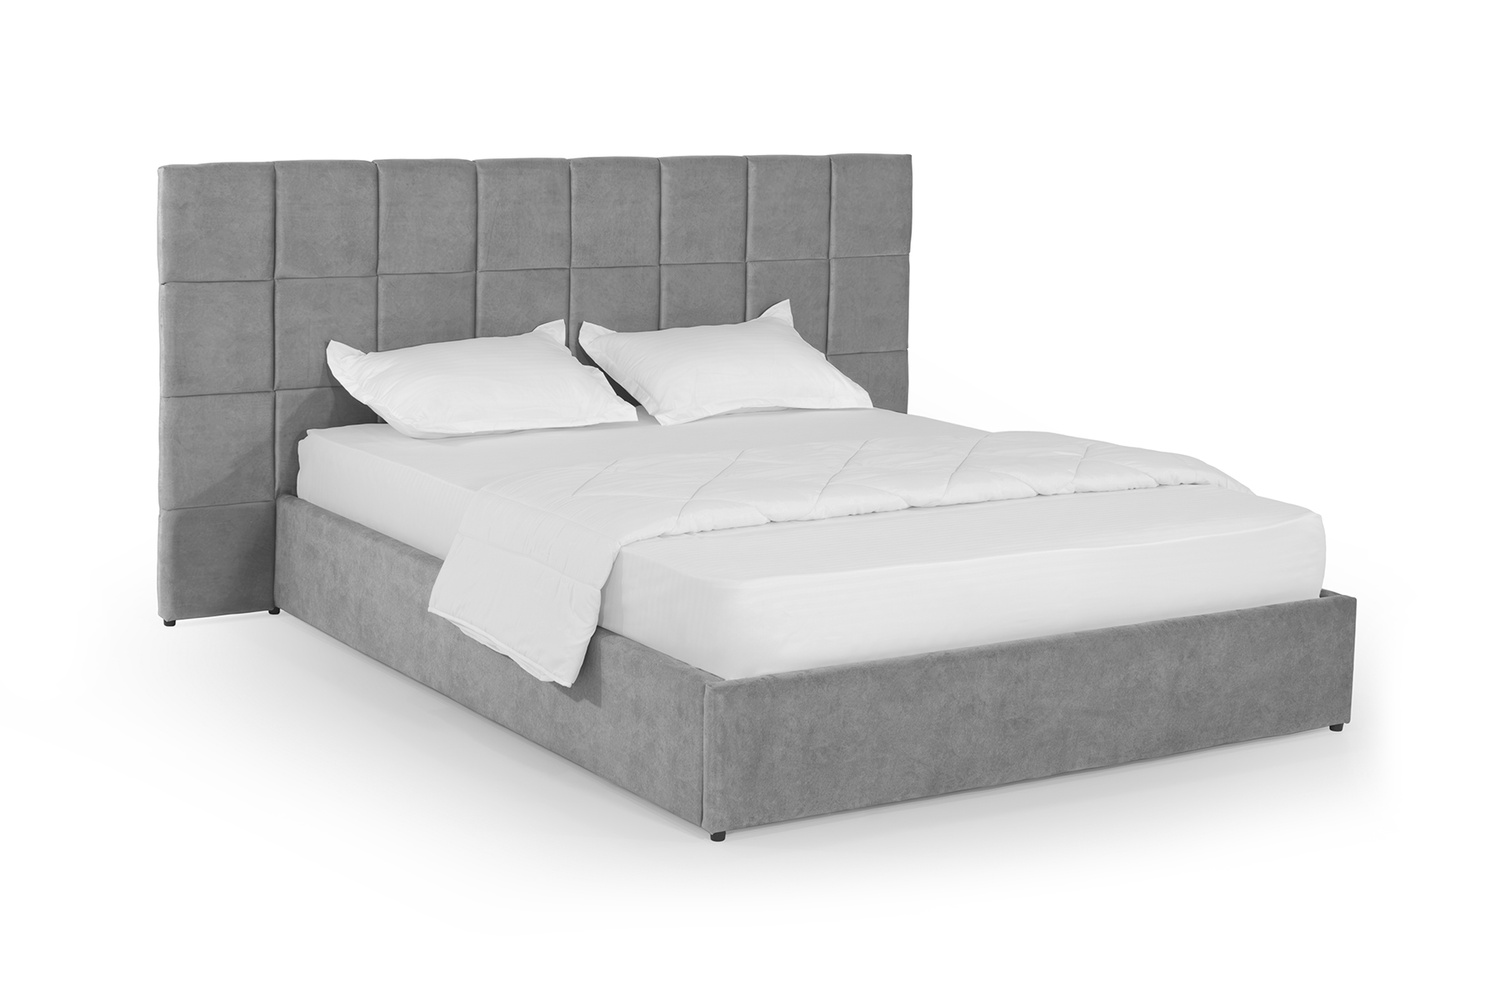 Ліжко Гортензія 180х190 (Світло-сірий, велюр, без підйомного механізму) IMI grtnz180x190ssb фото